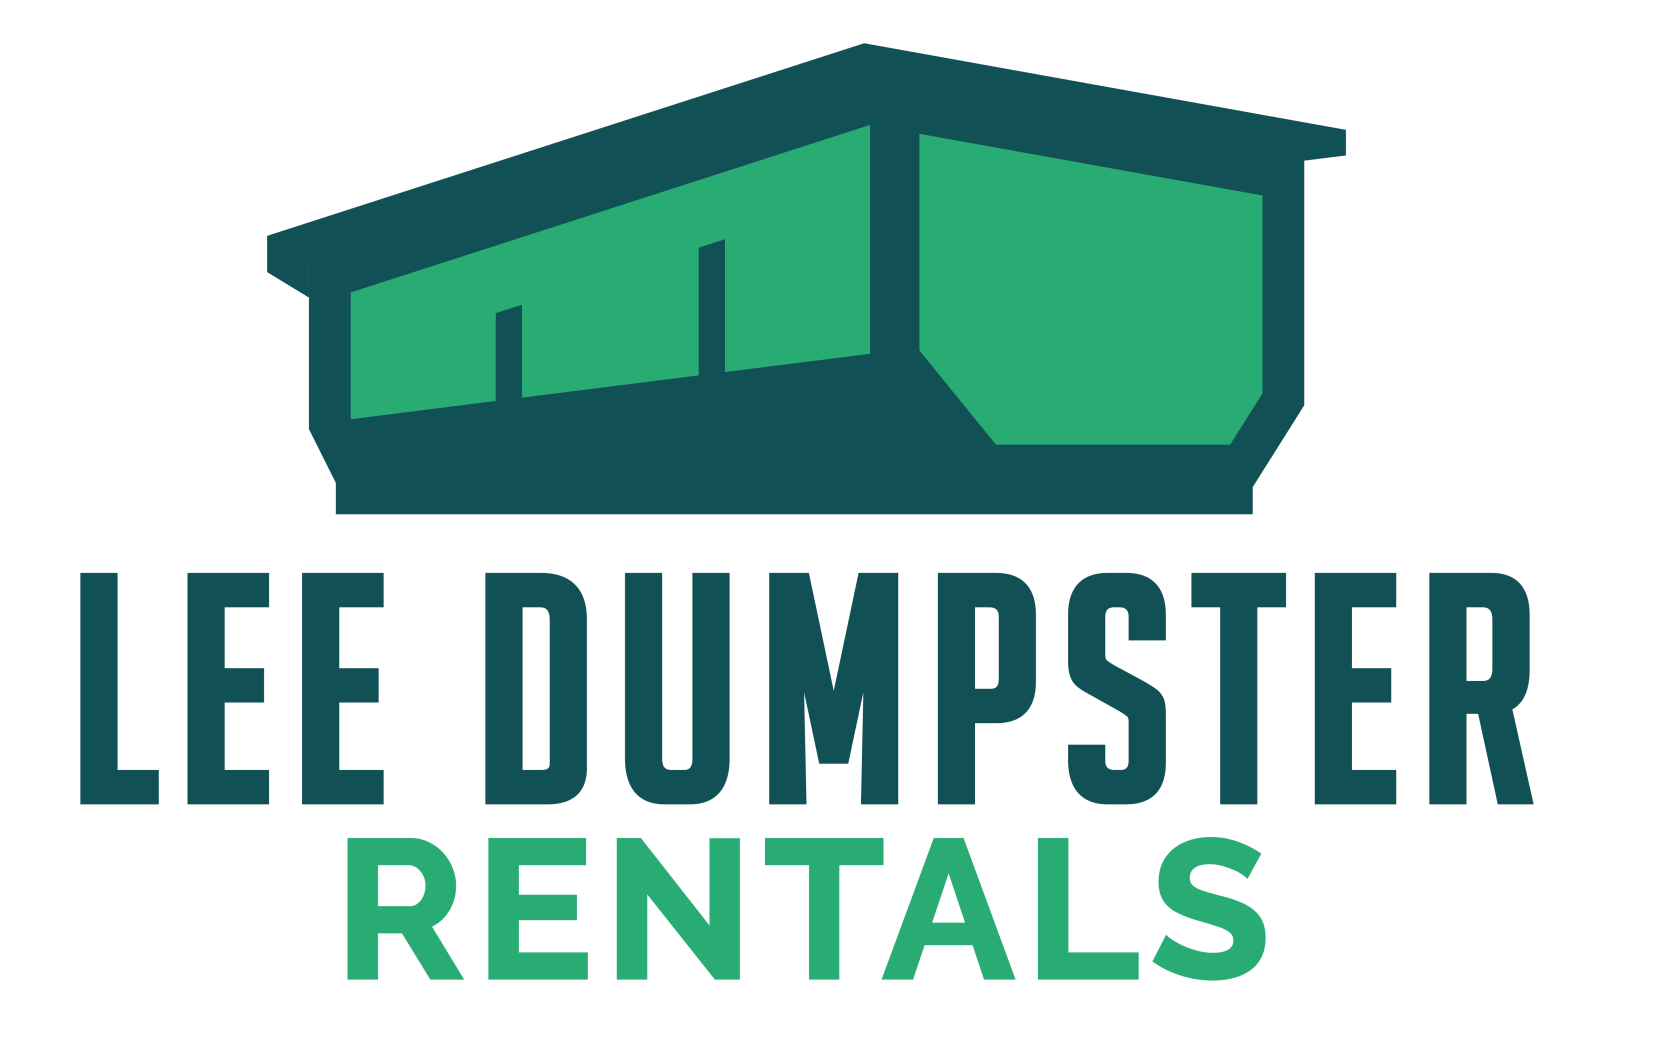 Lee Dumpster Rentals Logo